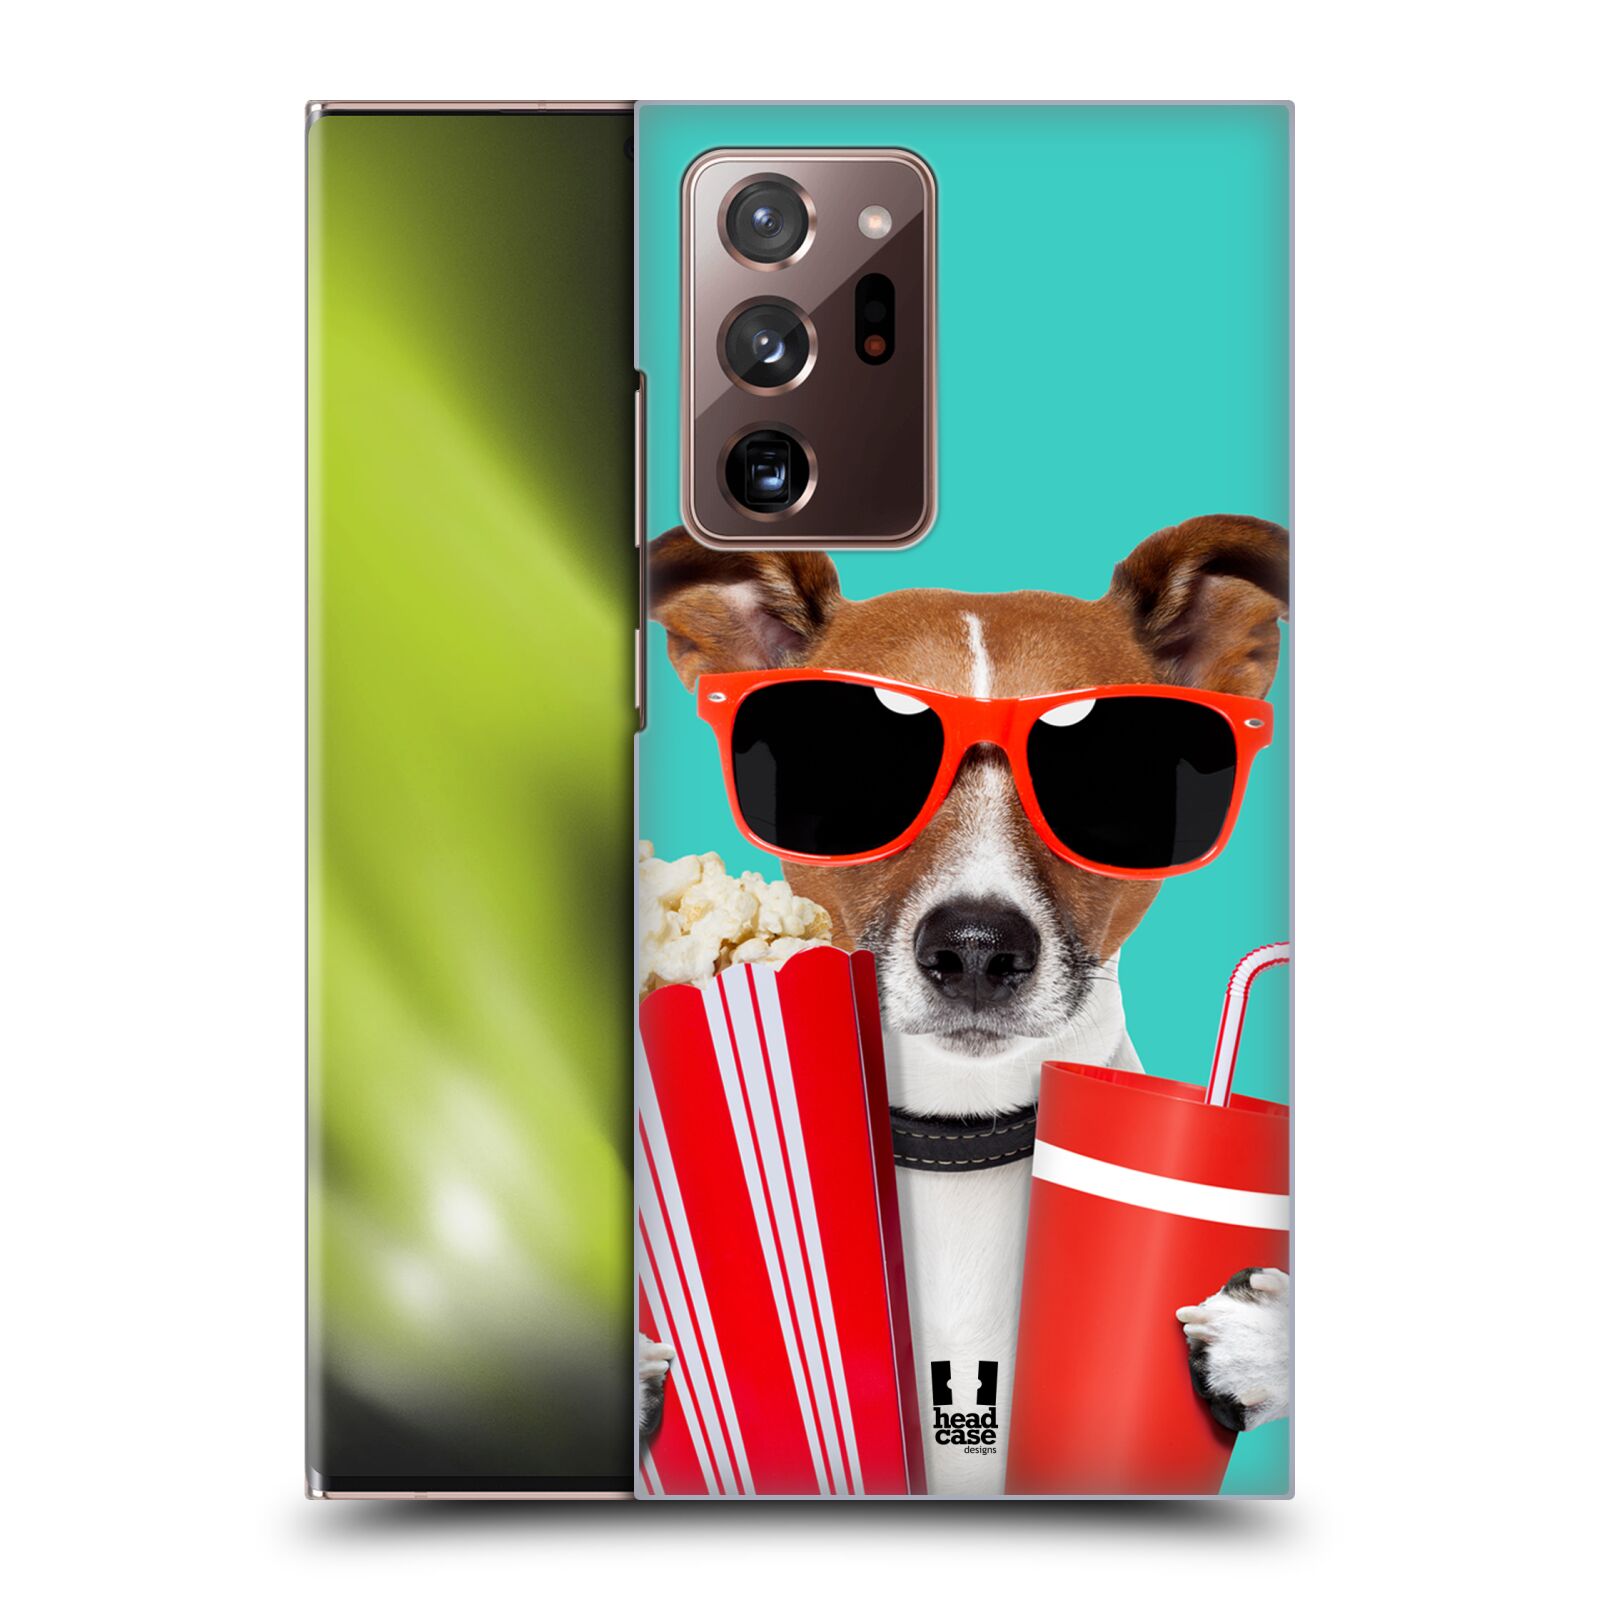 Plastový obal HEAD CASE na mobil Samsung Galaxy Note 20 ULTRA vzor Legrační zvířátka pejsek v kině s popkornem